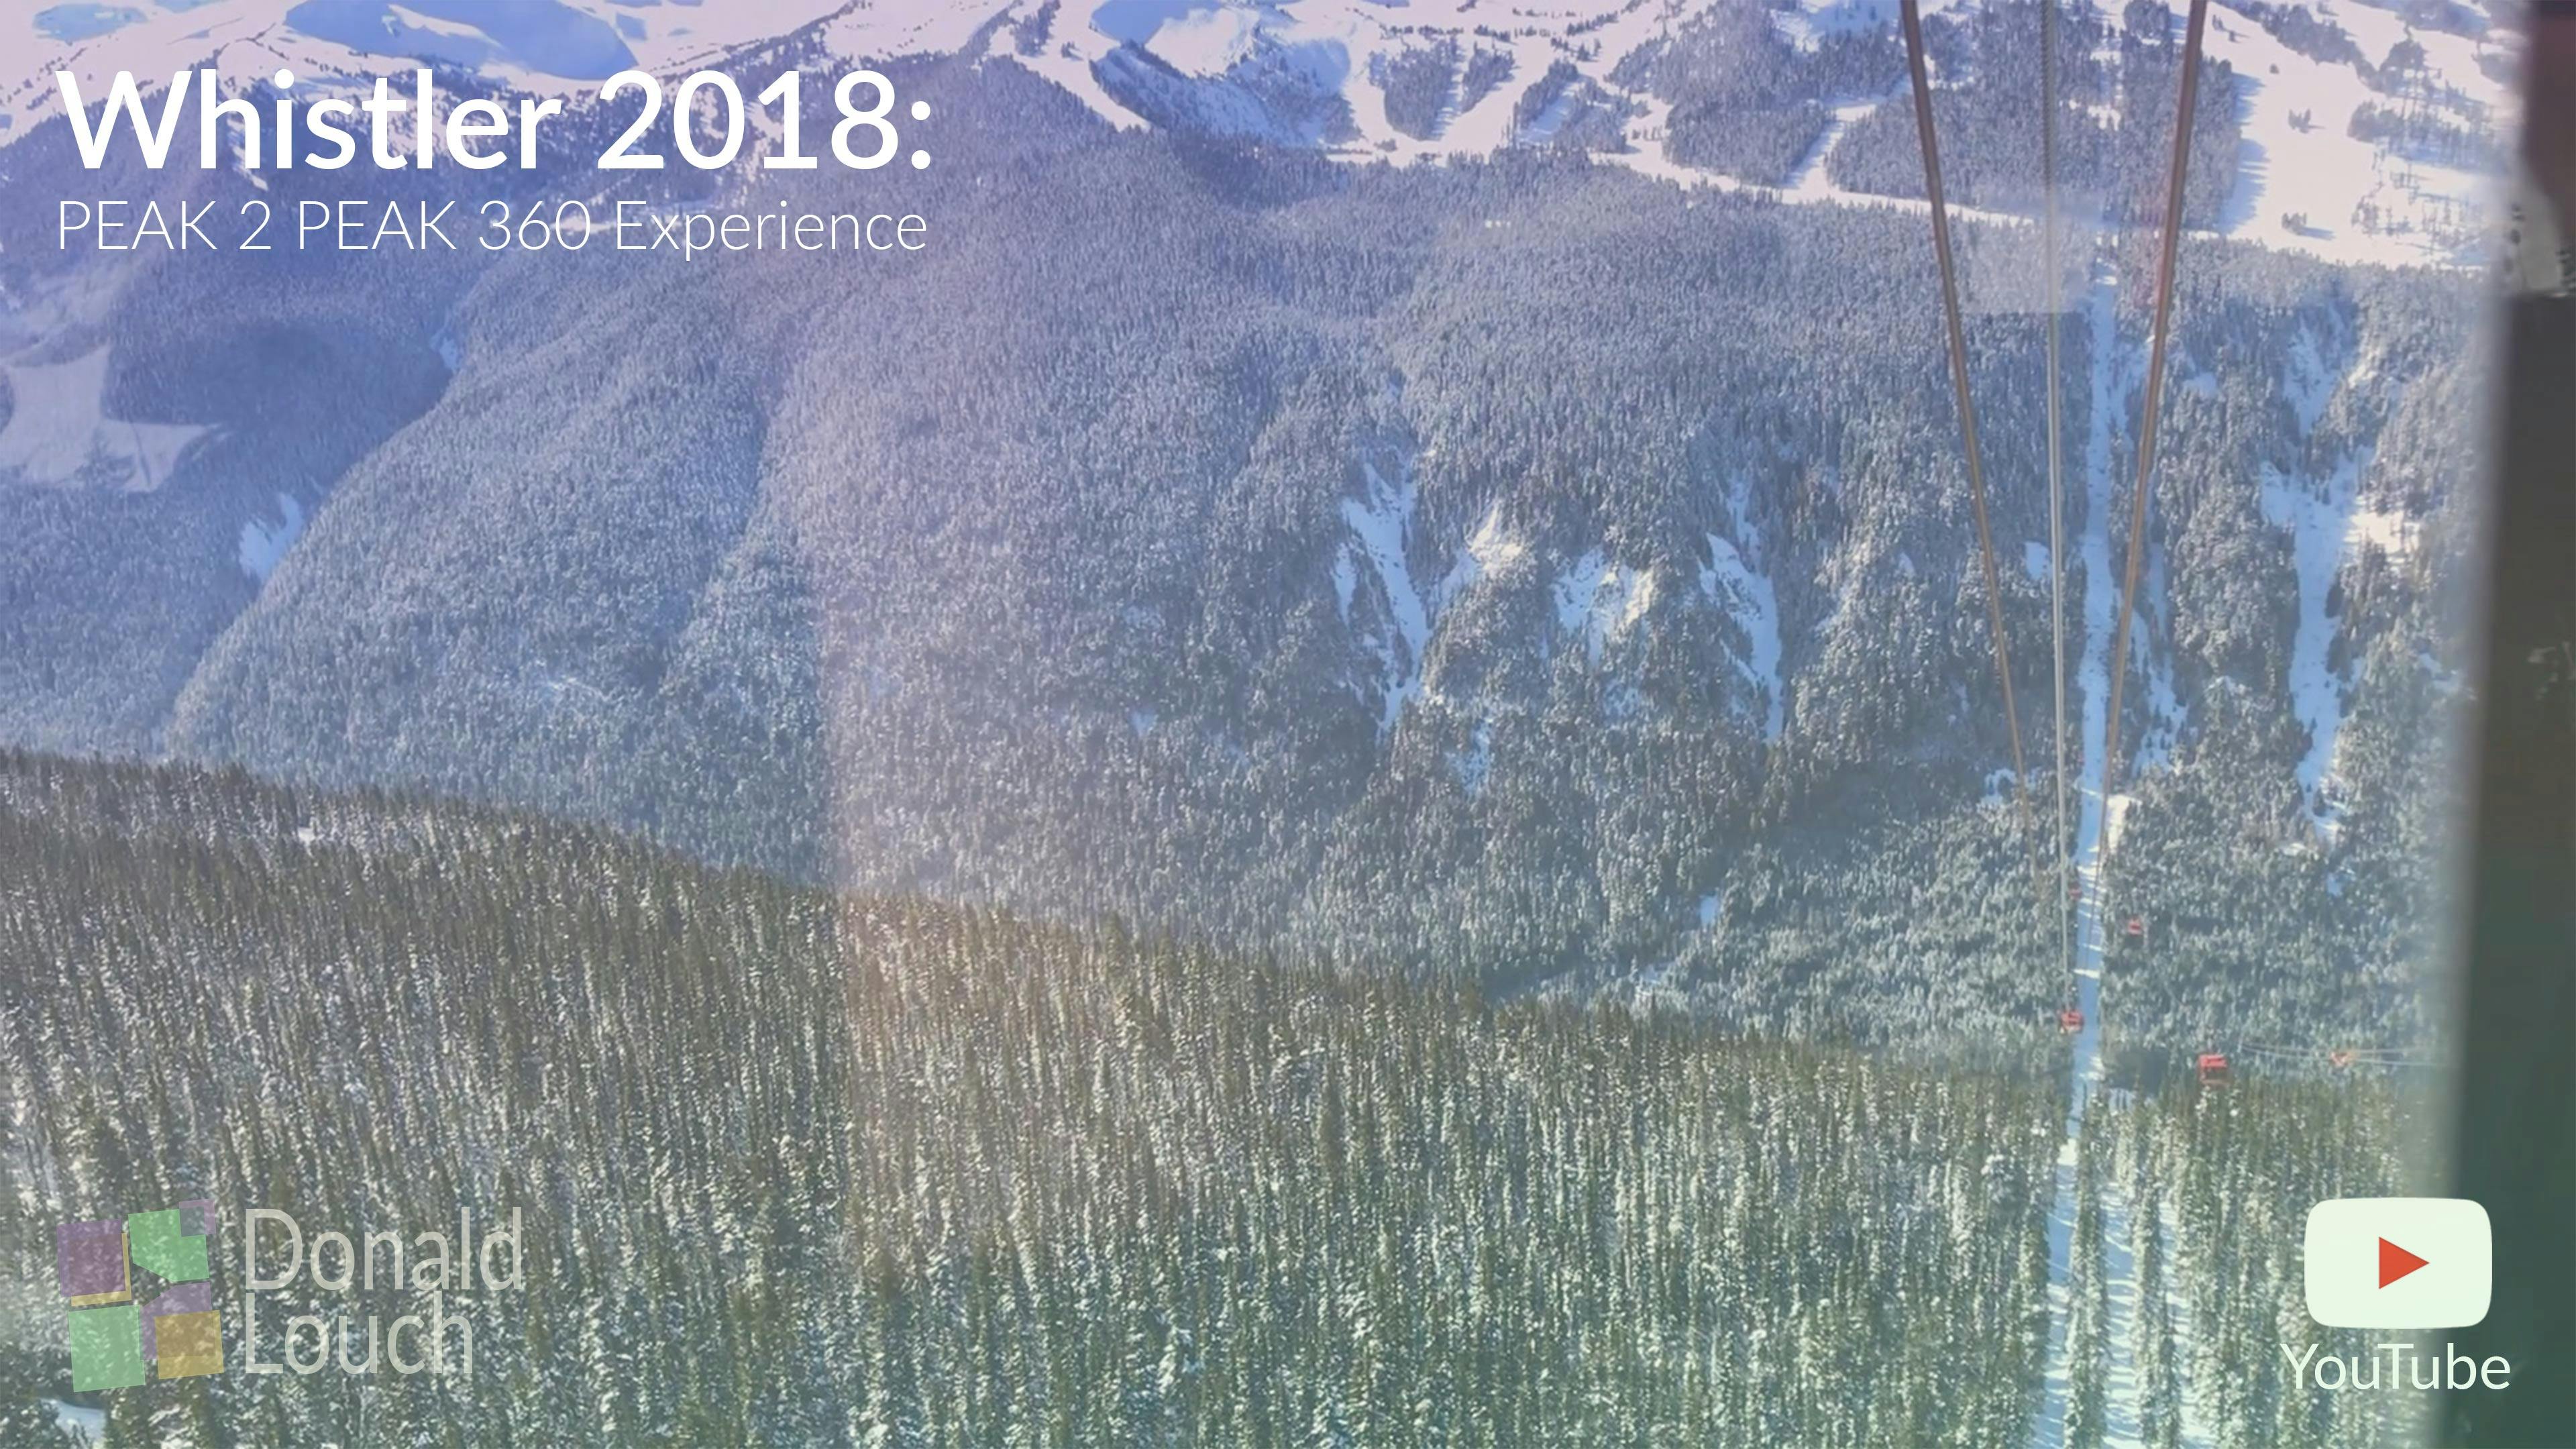 Whistler PEAK 2 PEAK 360 Experience | Whistler 2018